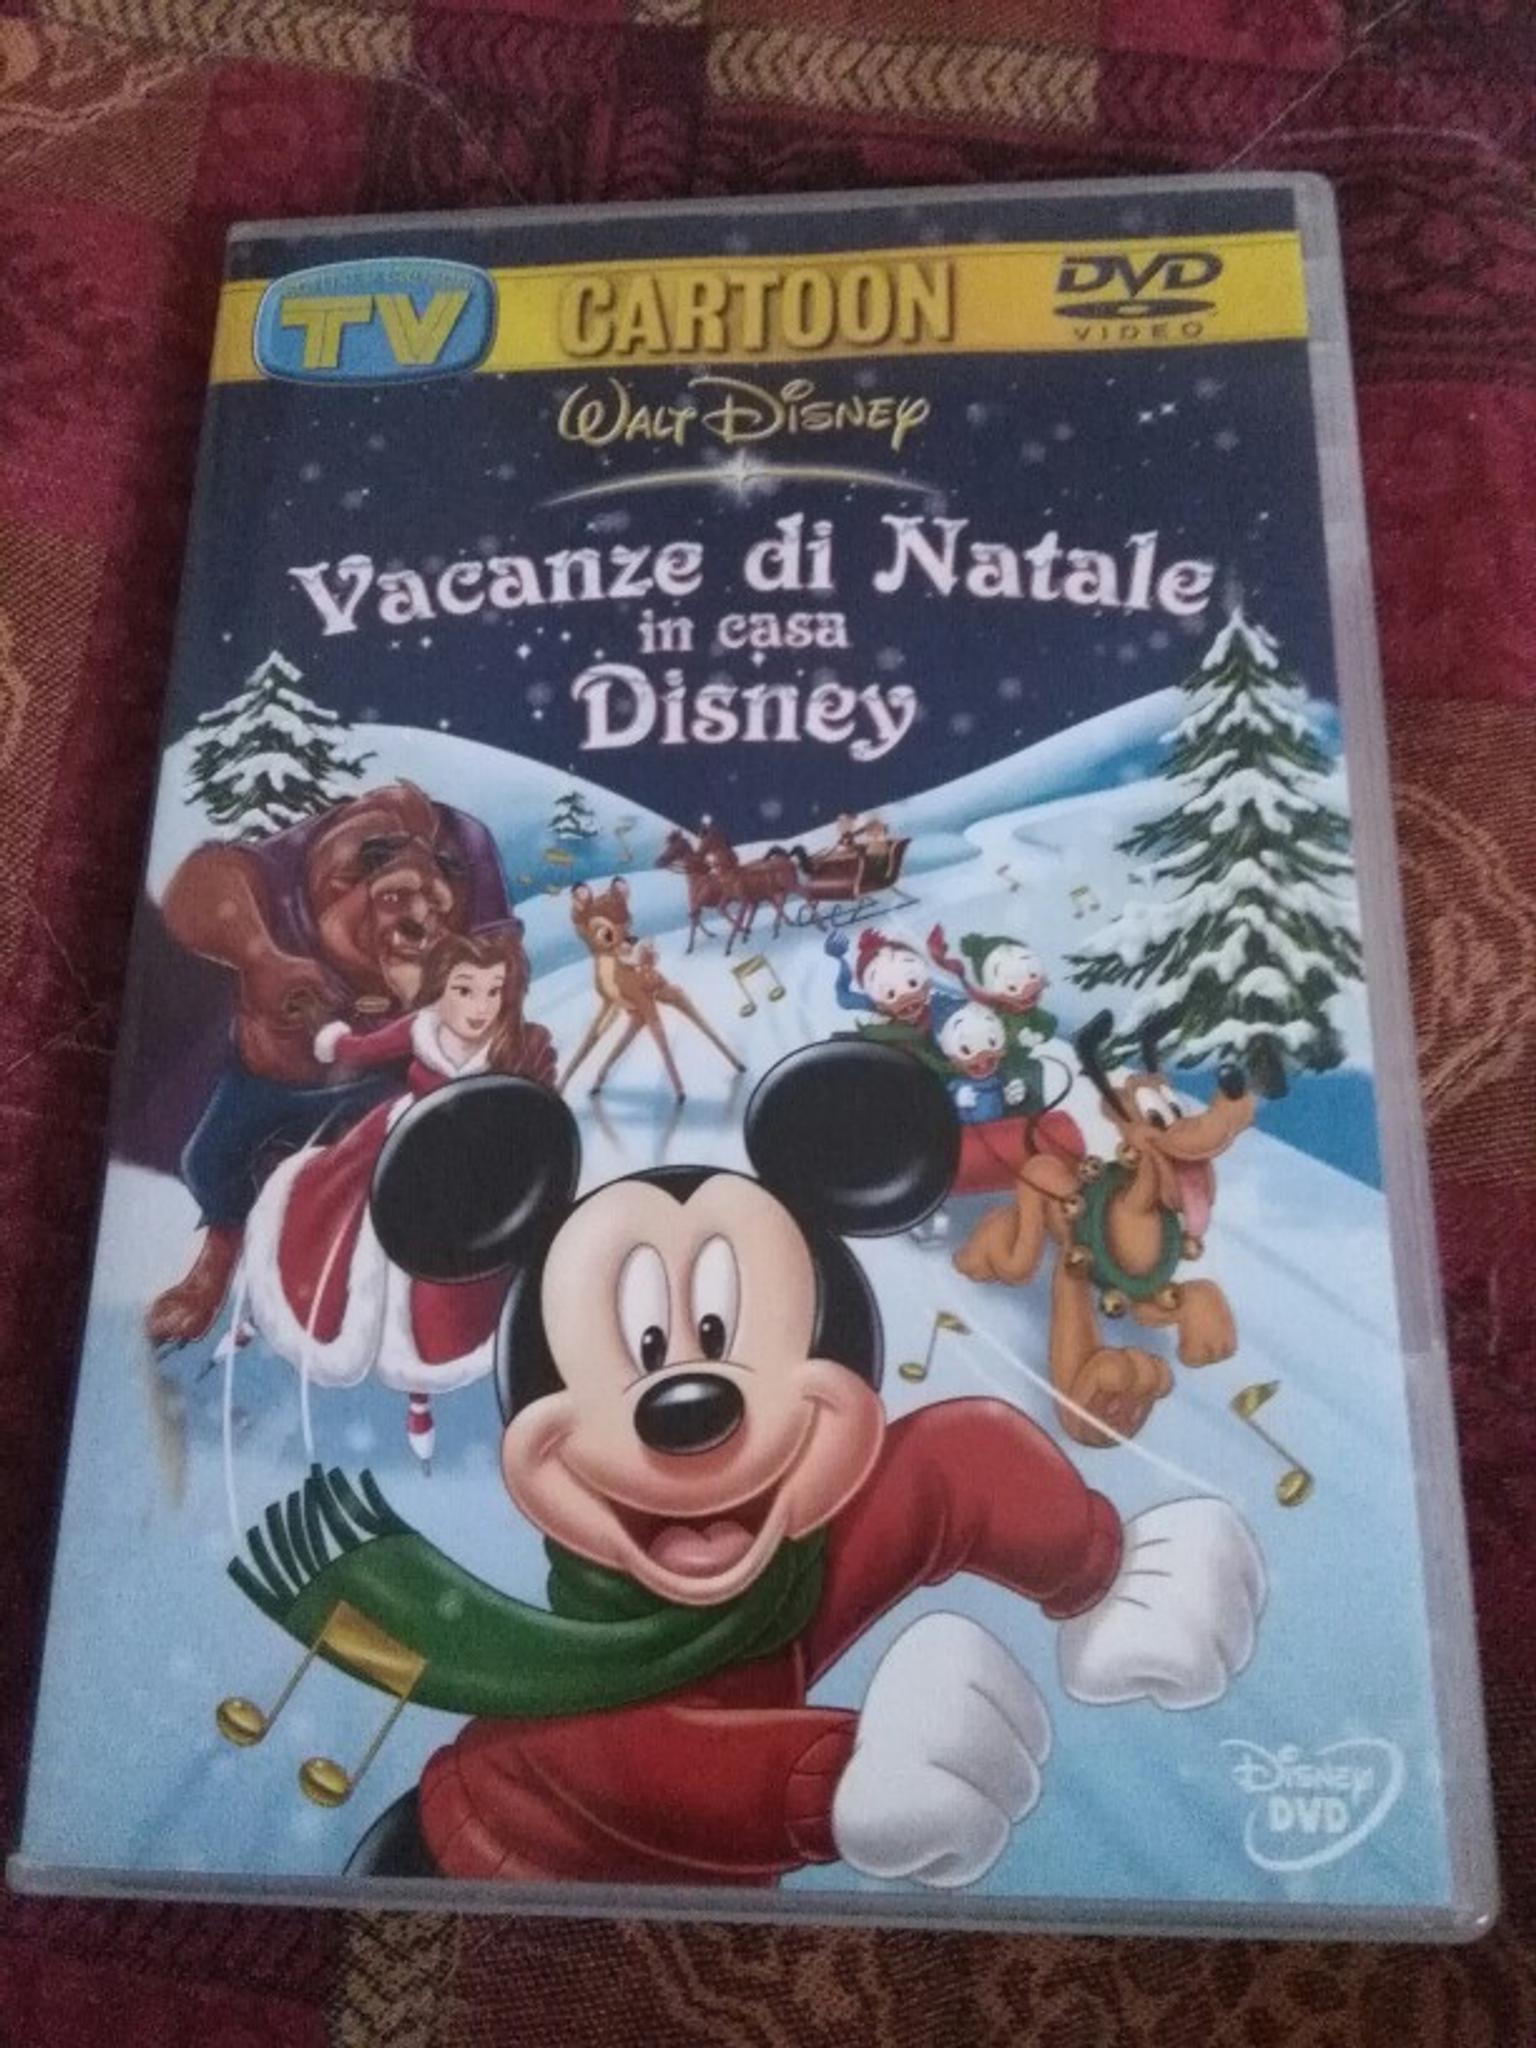 Auguri Di Buon Natale Walt Disney.Vacanze Di Natale In Casa Disney In 20137 Milano For 7 50 For Sale Shpock